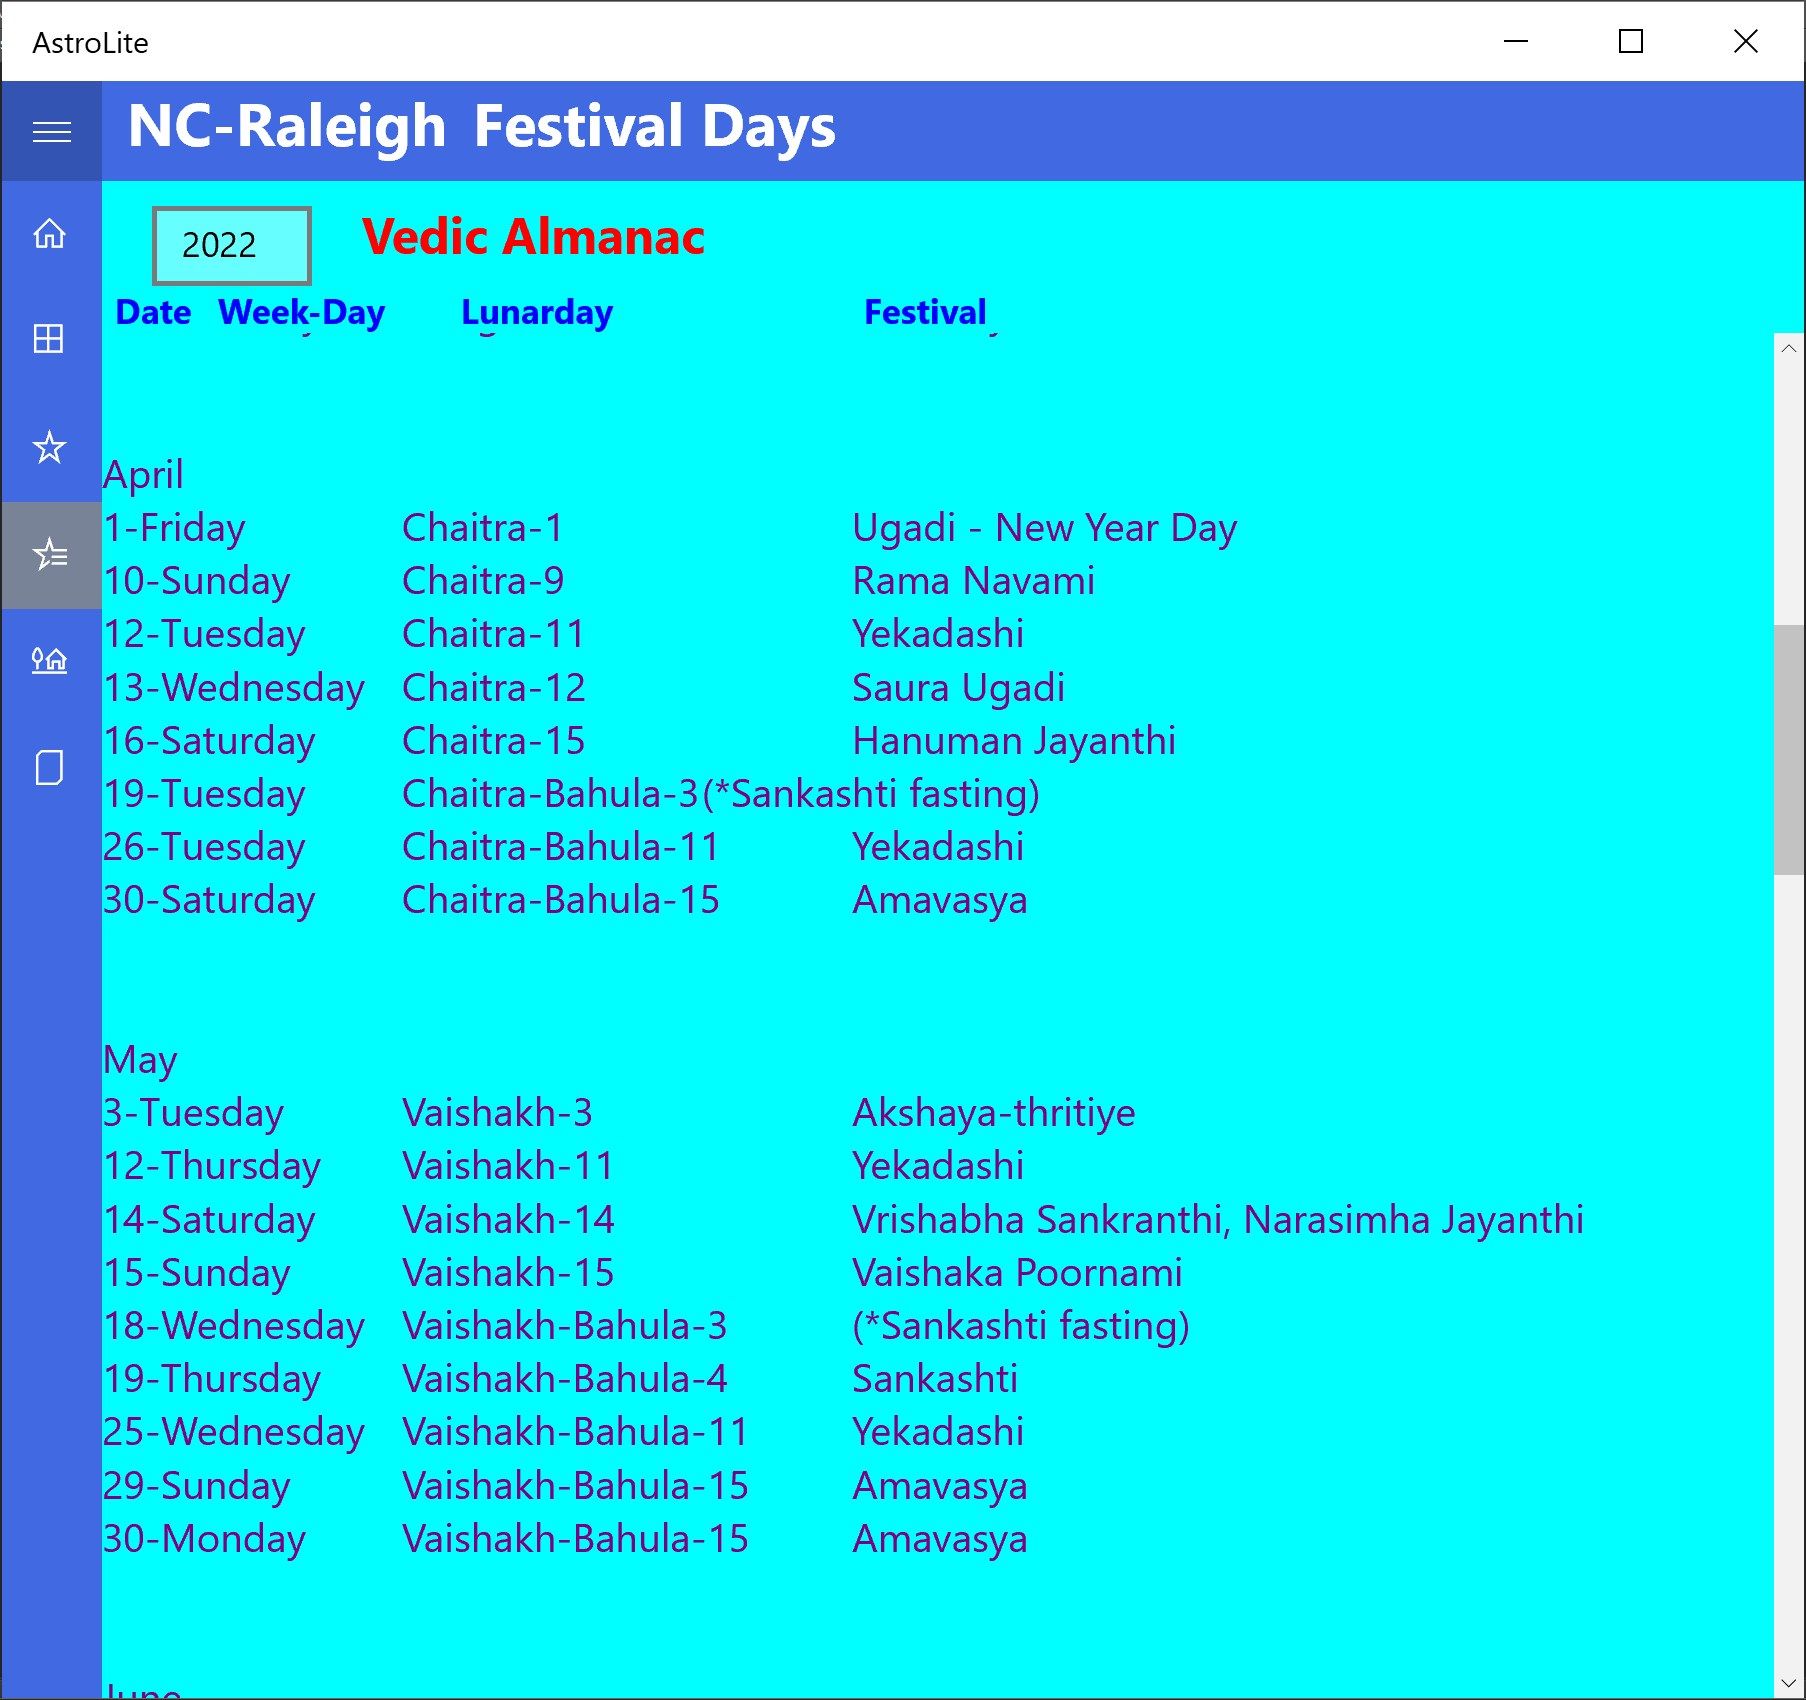 Annual festival list